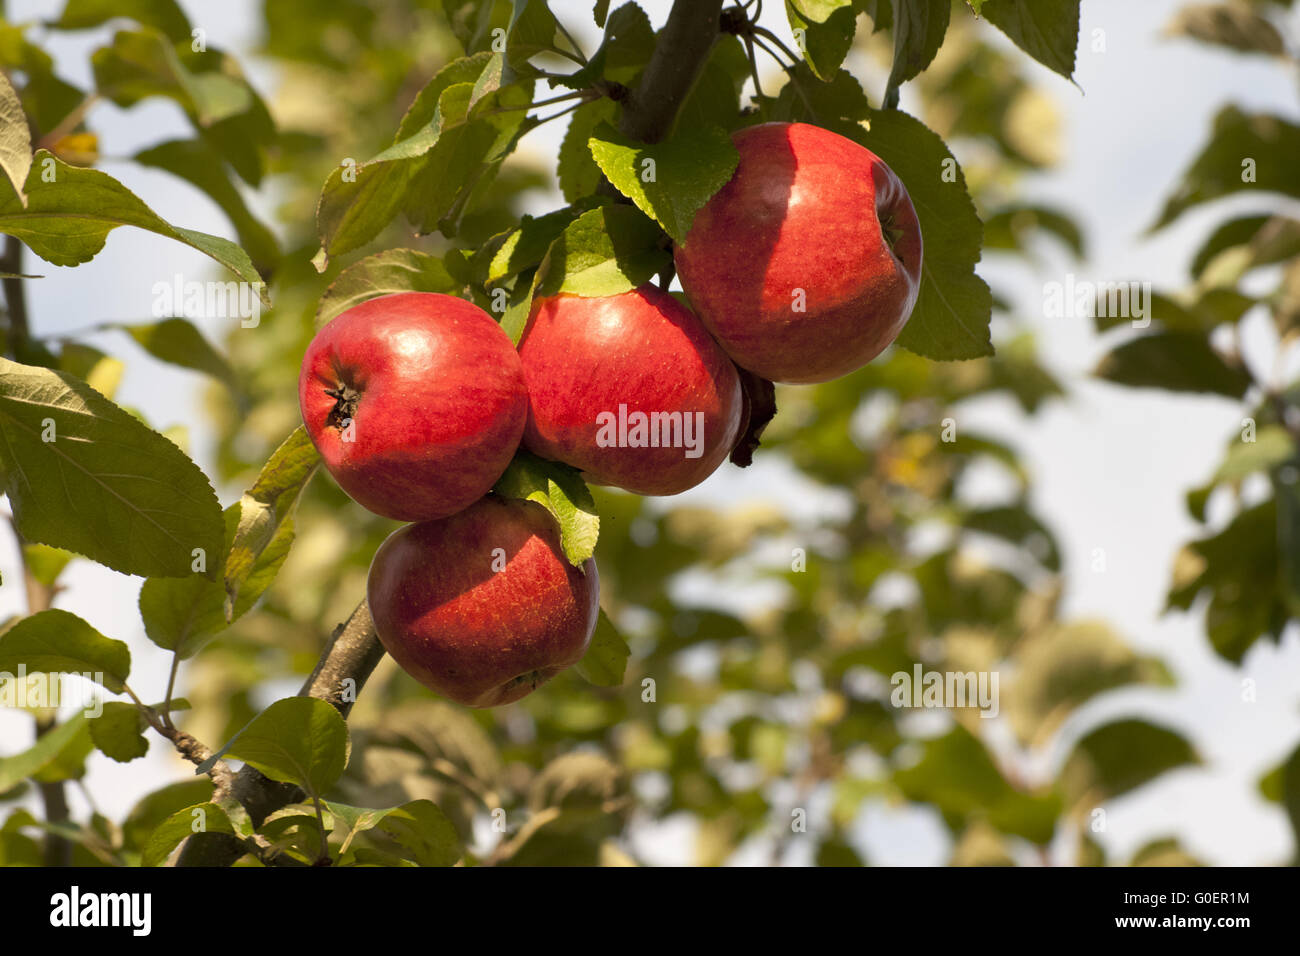 Apple on tree Stock Photo